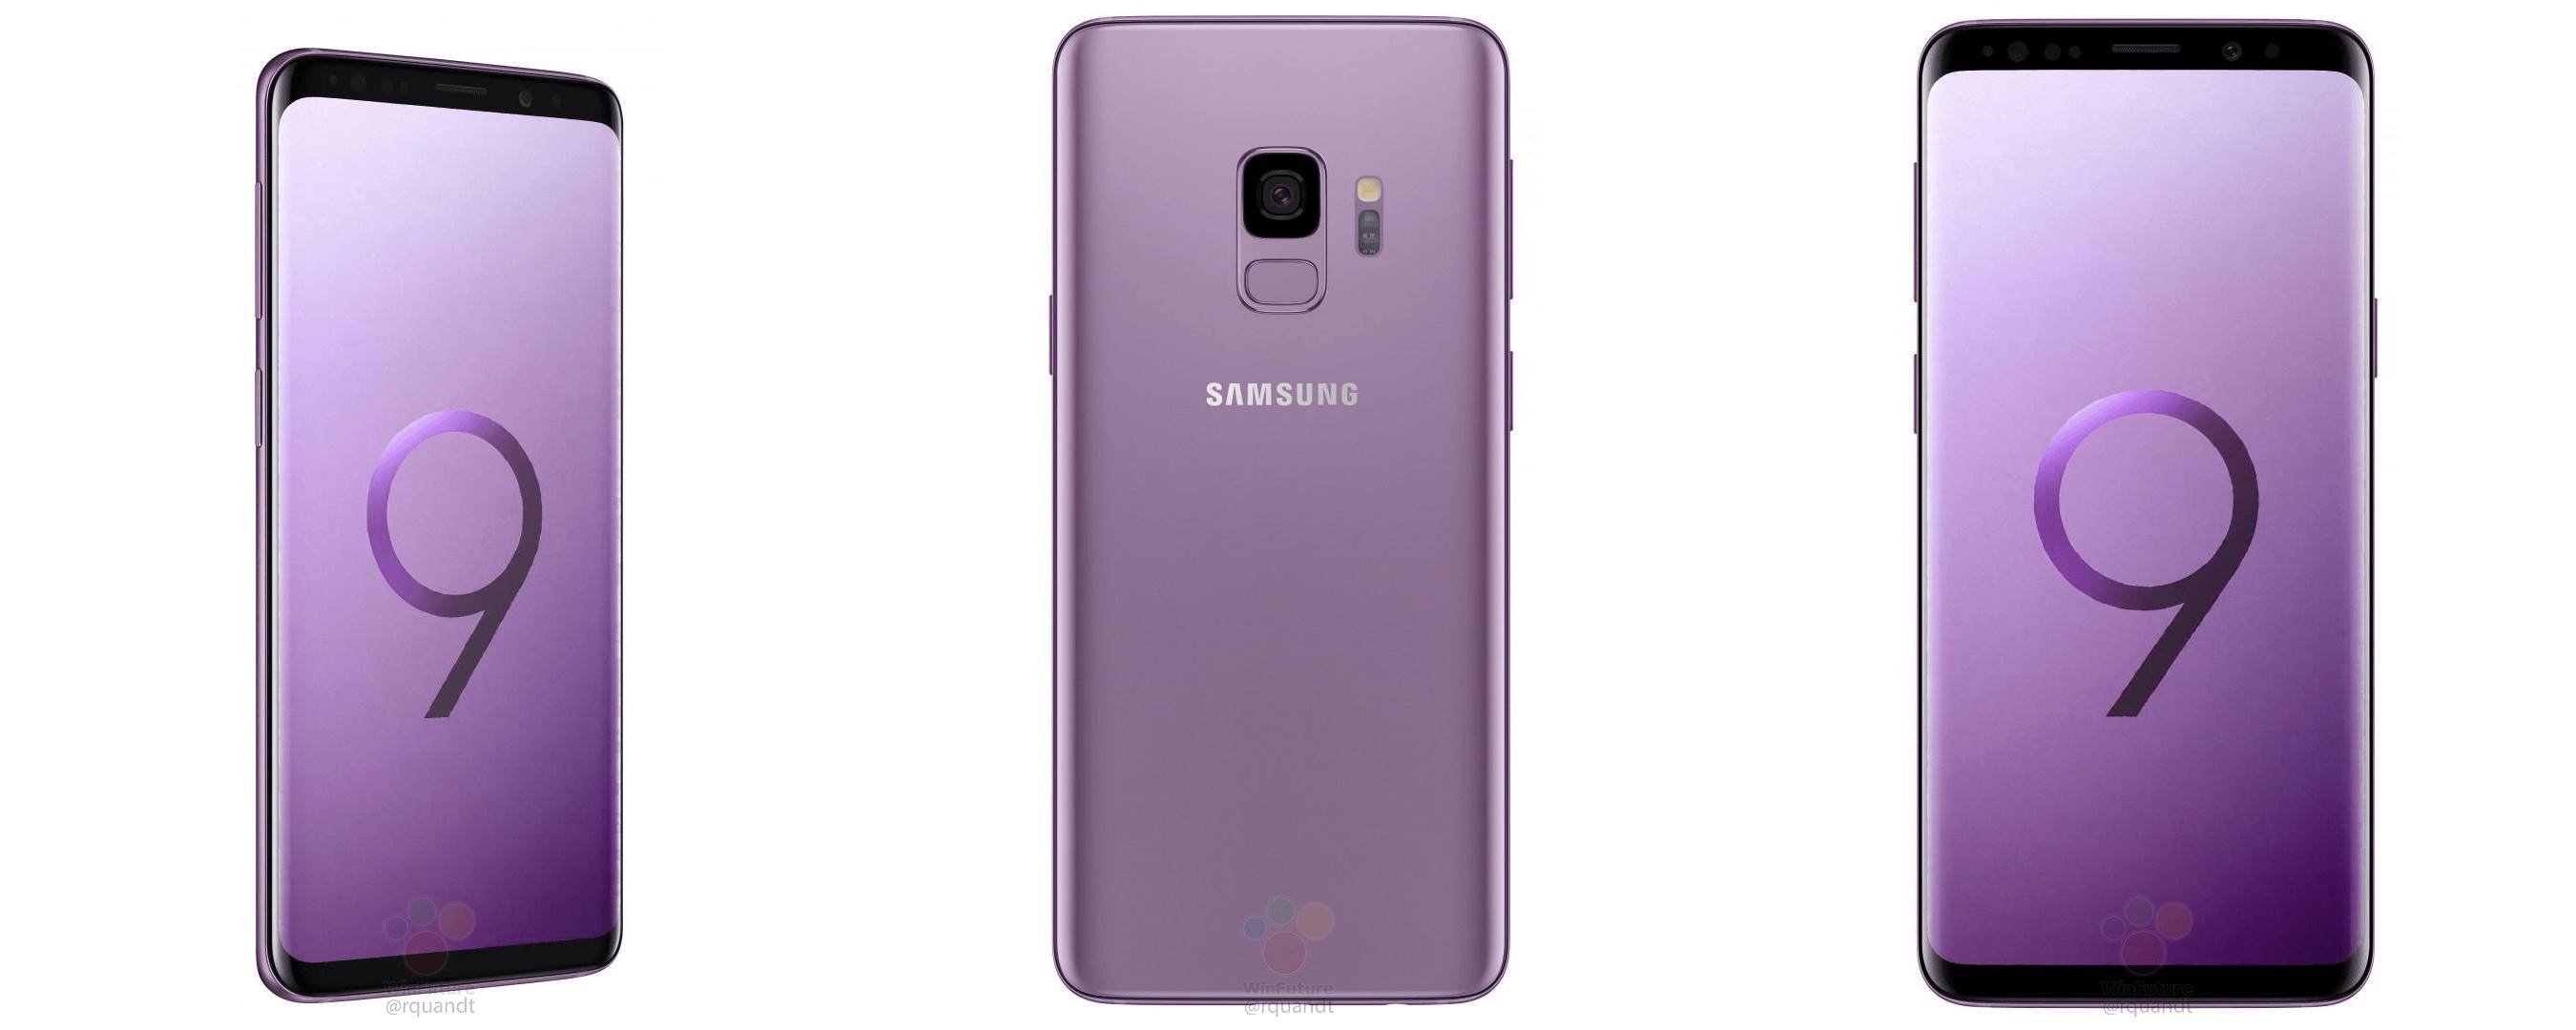 Immagini per la stampa viola del Samsung Galaxy S9